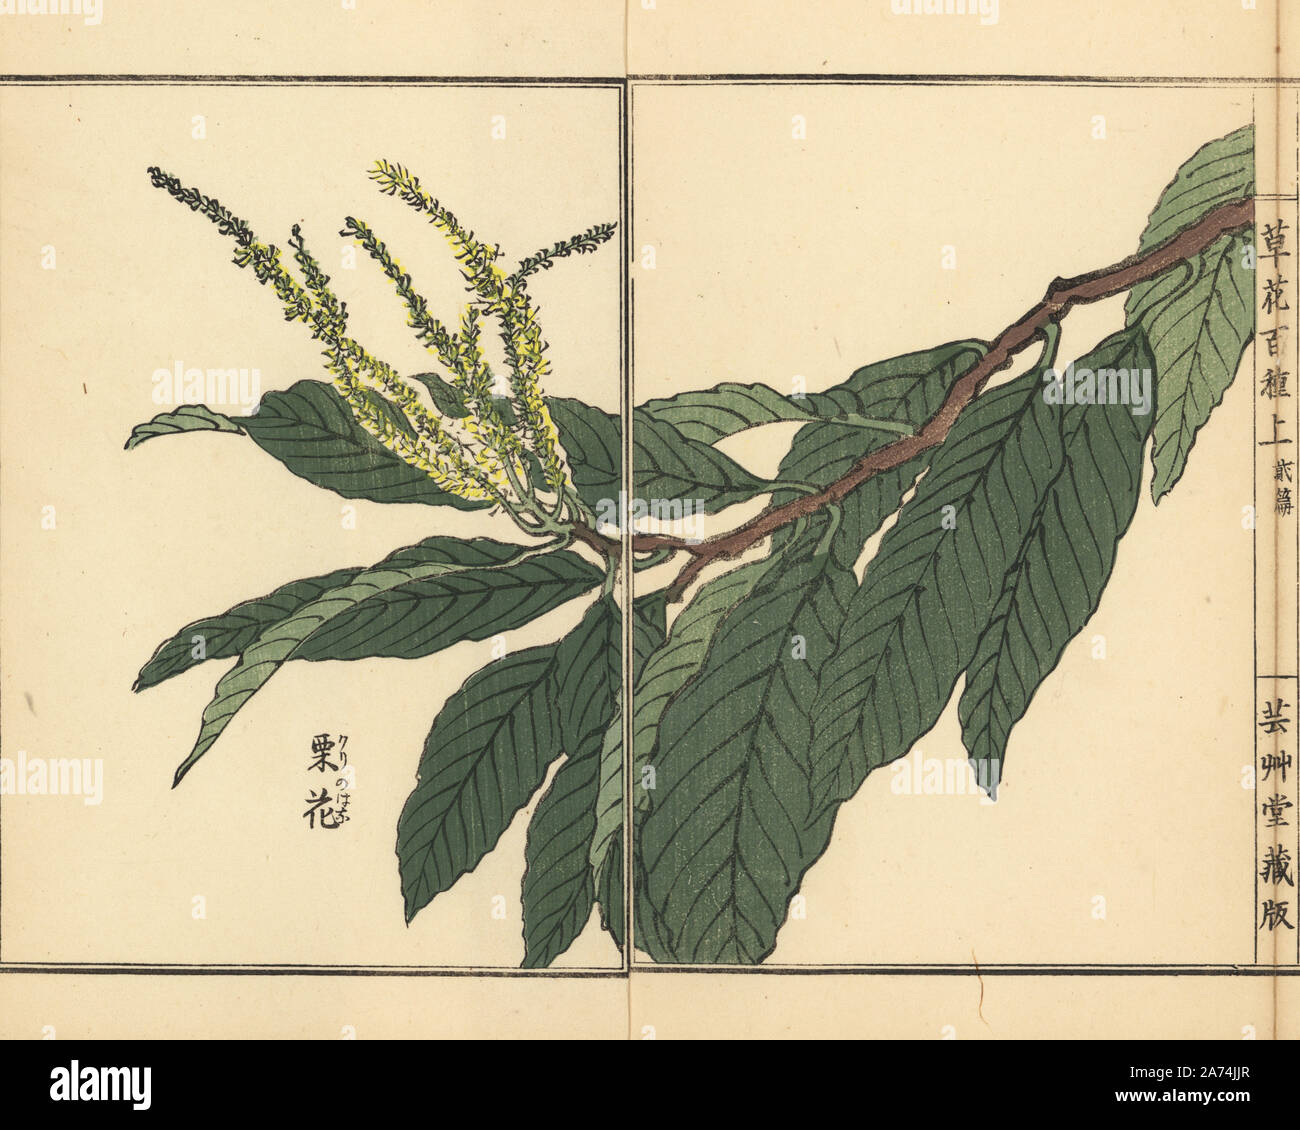 Kuri or Japanese chestnut flower, Castanea crenata. Handcoloured woodblock print by Kono Bairei from Kusa Bana Hyakushu (One Hundred Varieties of Flowers), Tokyo, Yamada, 1901. Stock Photo